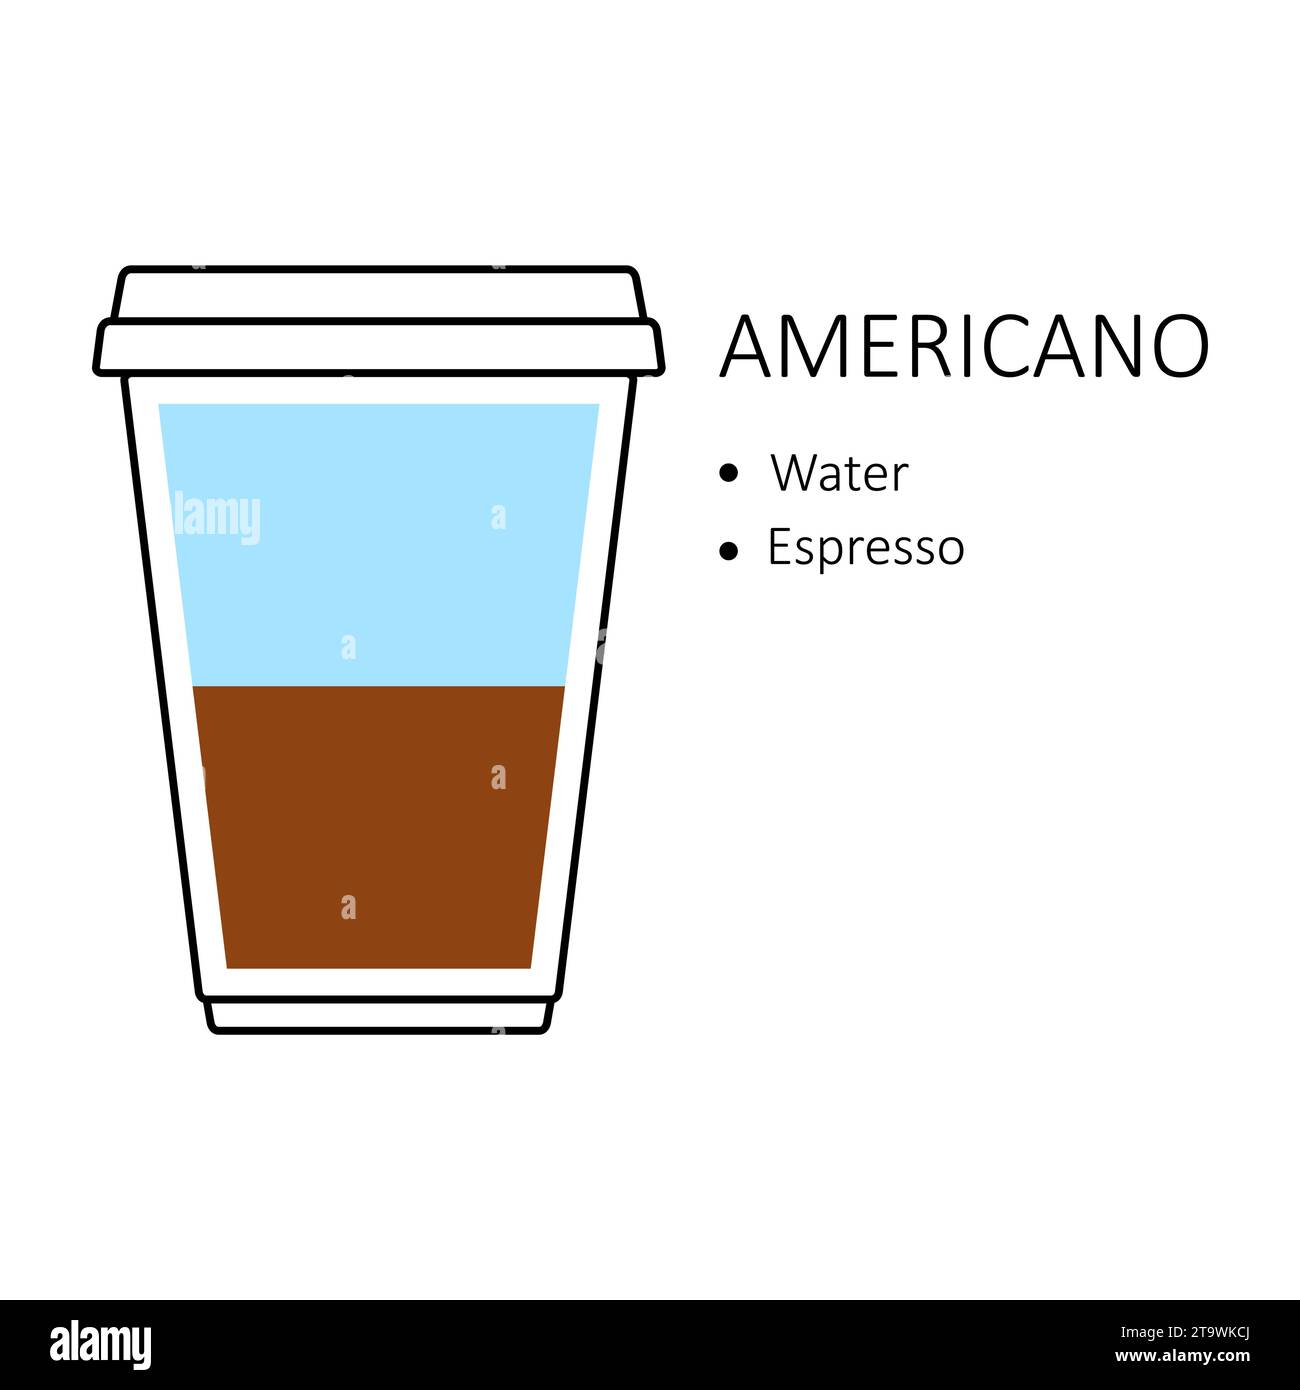 Americano-Kaffeerezept in Einweg-Plastikbecher zum Mitnehmen isoliert auf weißem Hintergrund. Anleitung zur Zubereitung mit Wasserschichten und Espresso. Kaffee Stock Vektor